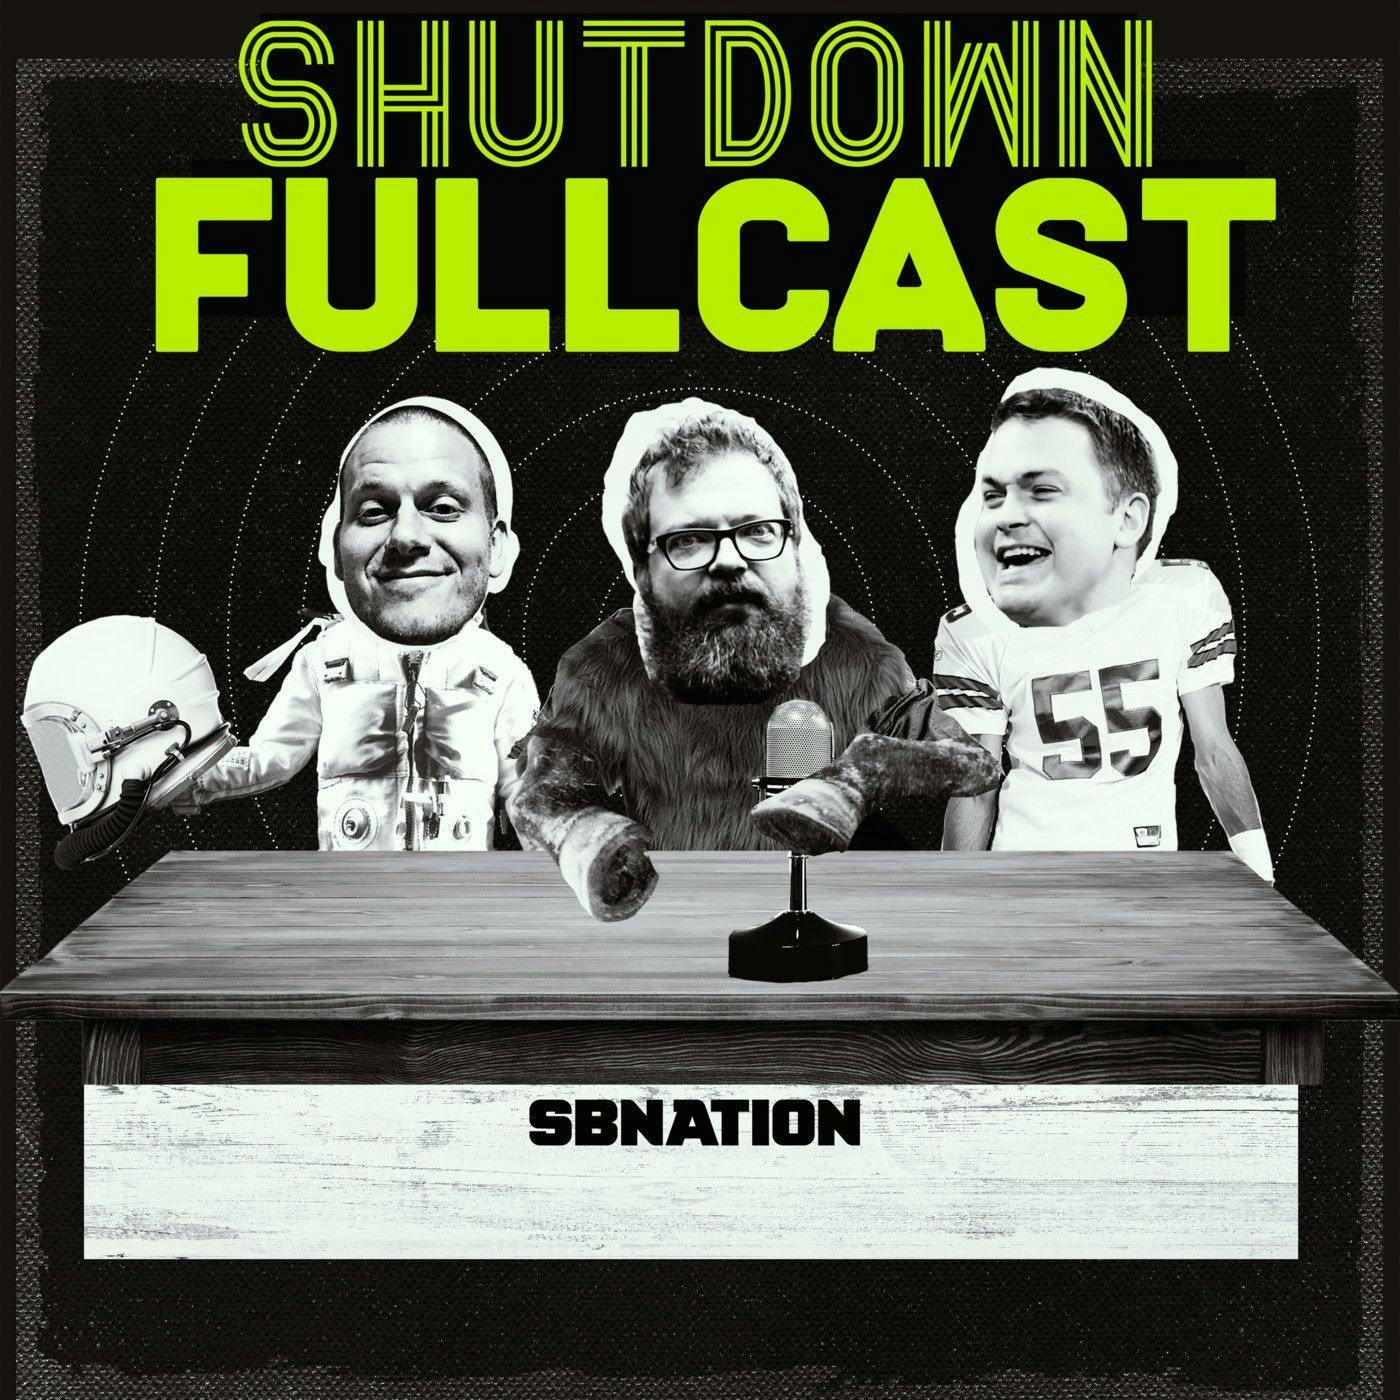 Shutdown Fullcast 40 for 40: The 2017 Belk Bowl